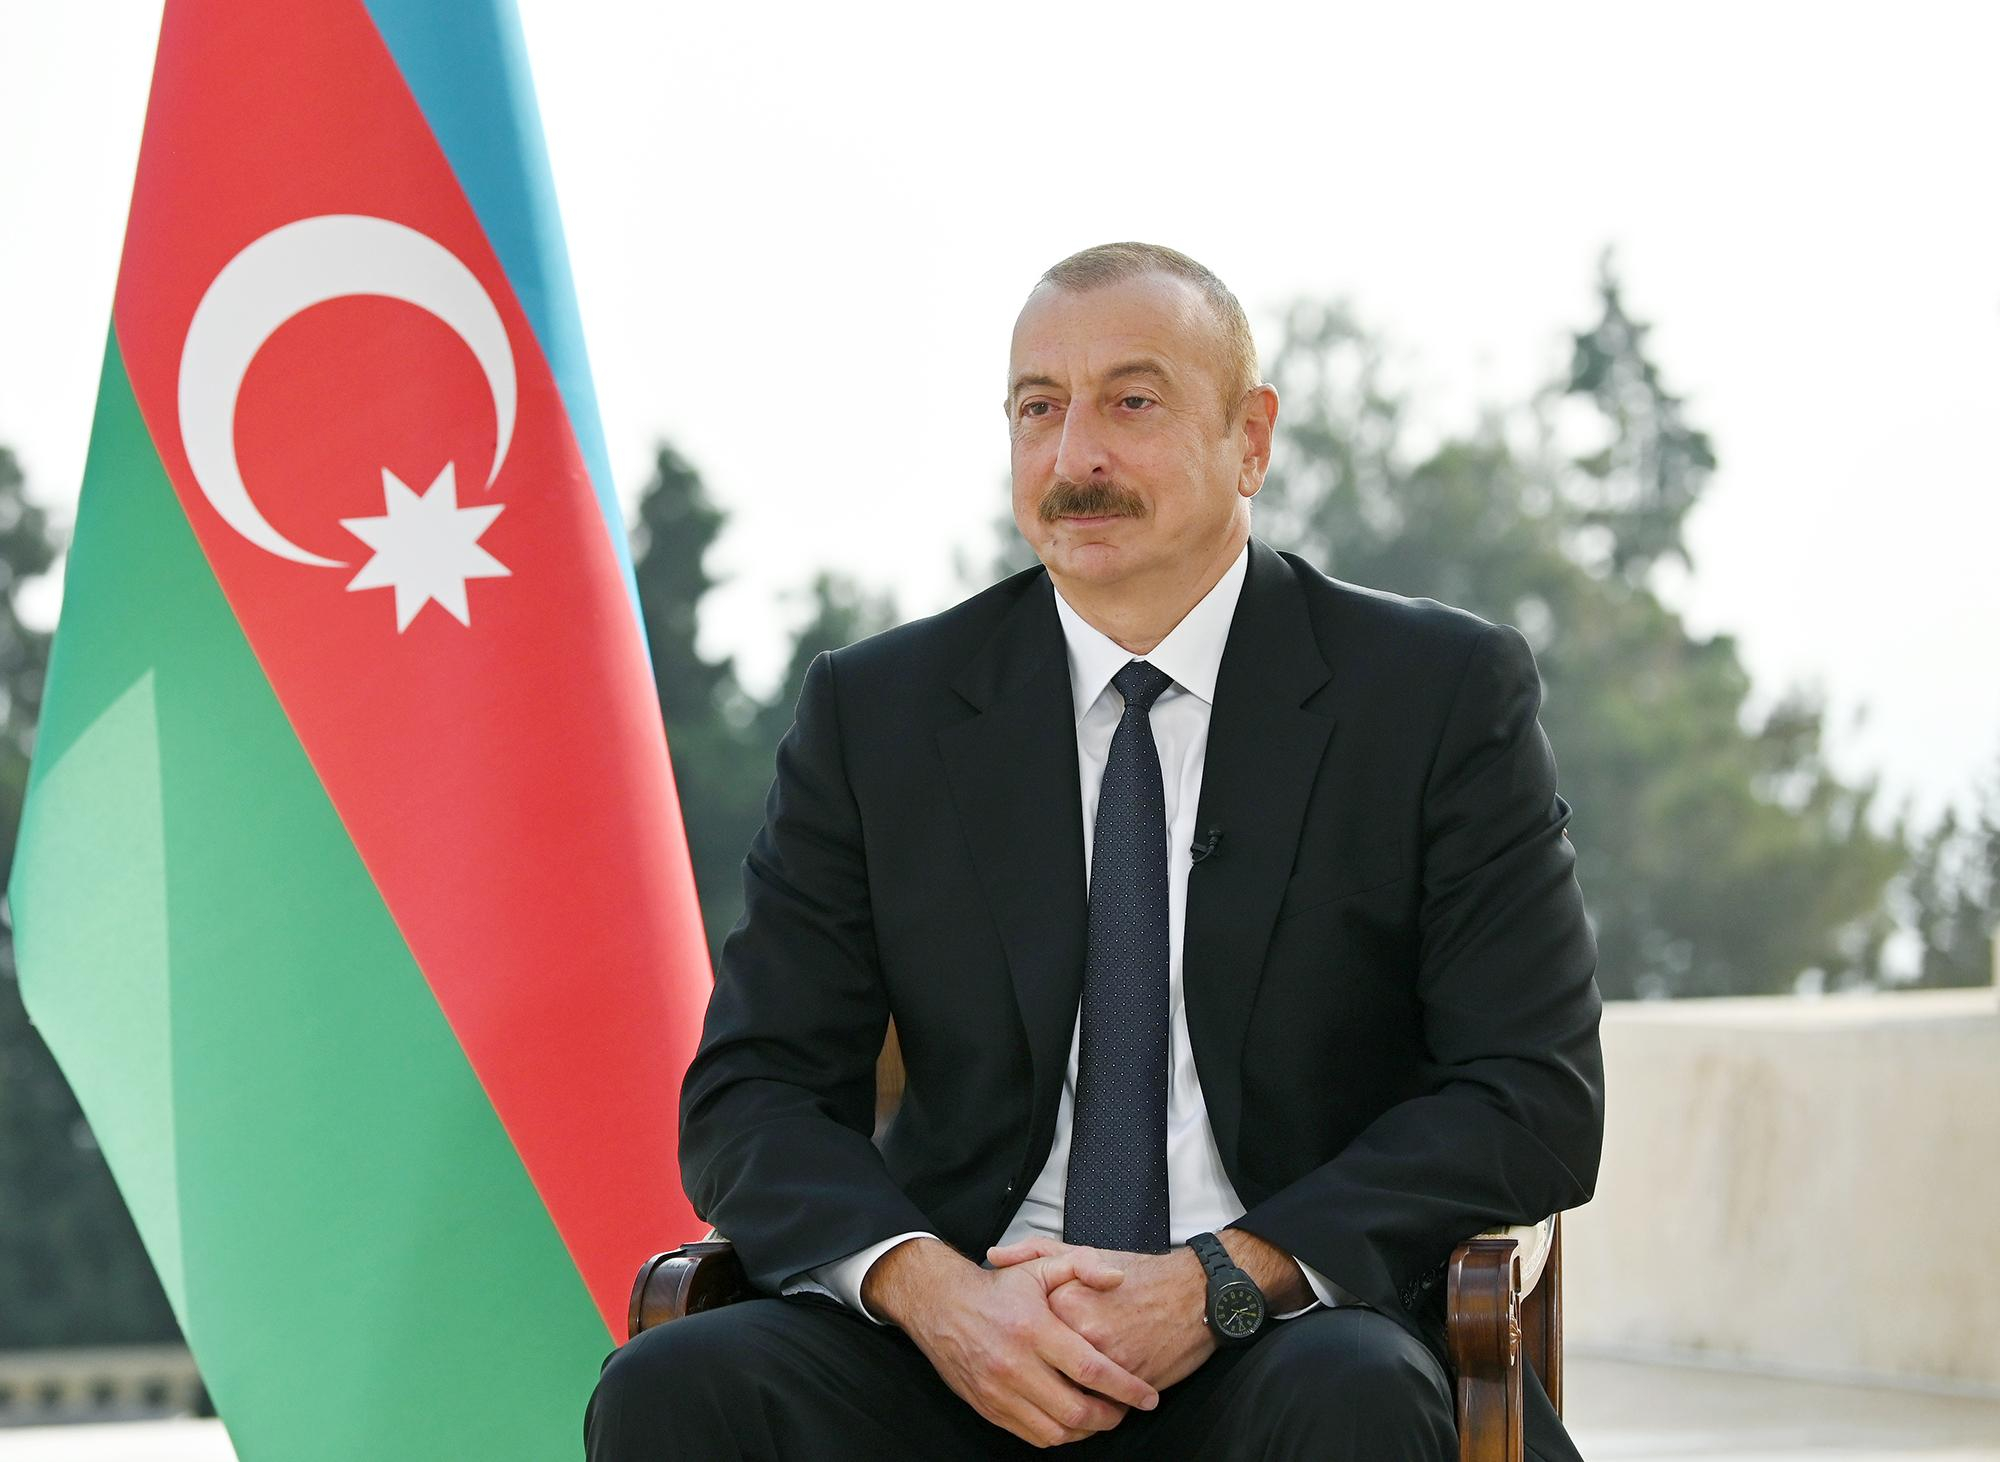 Ильхам Алиев: Между нами существует полное понимание, и мы работаем с большим энтузиазмом